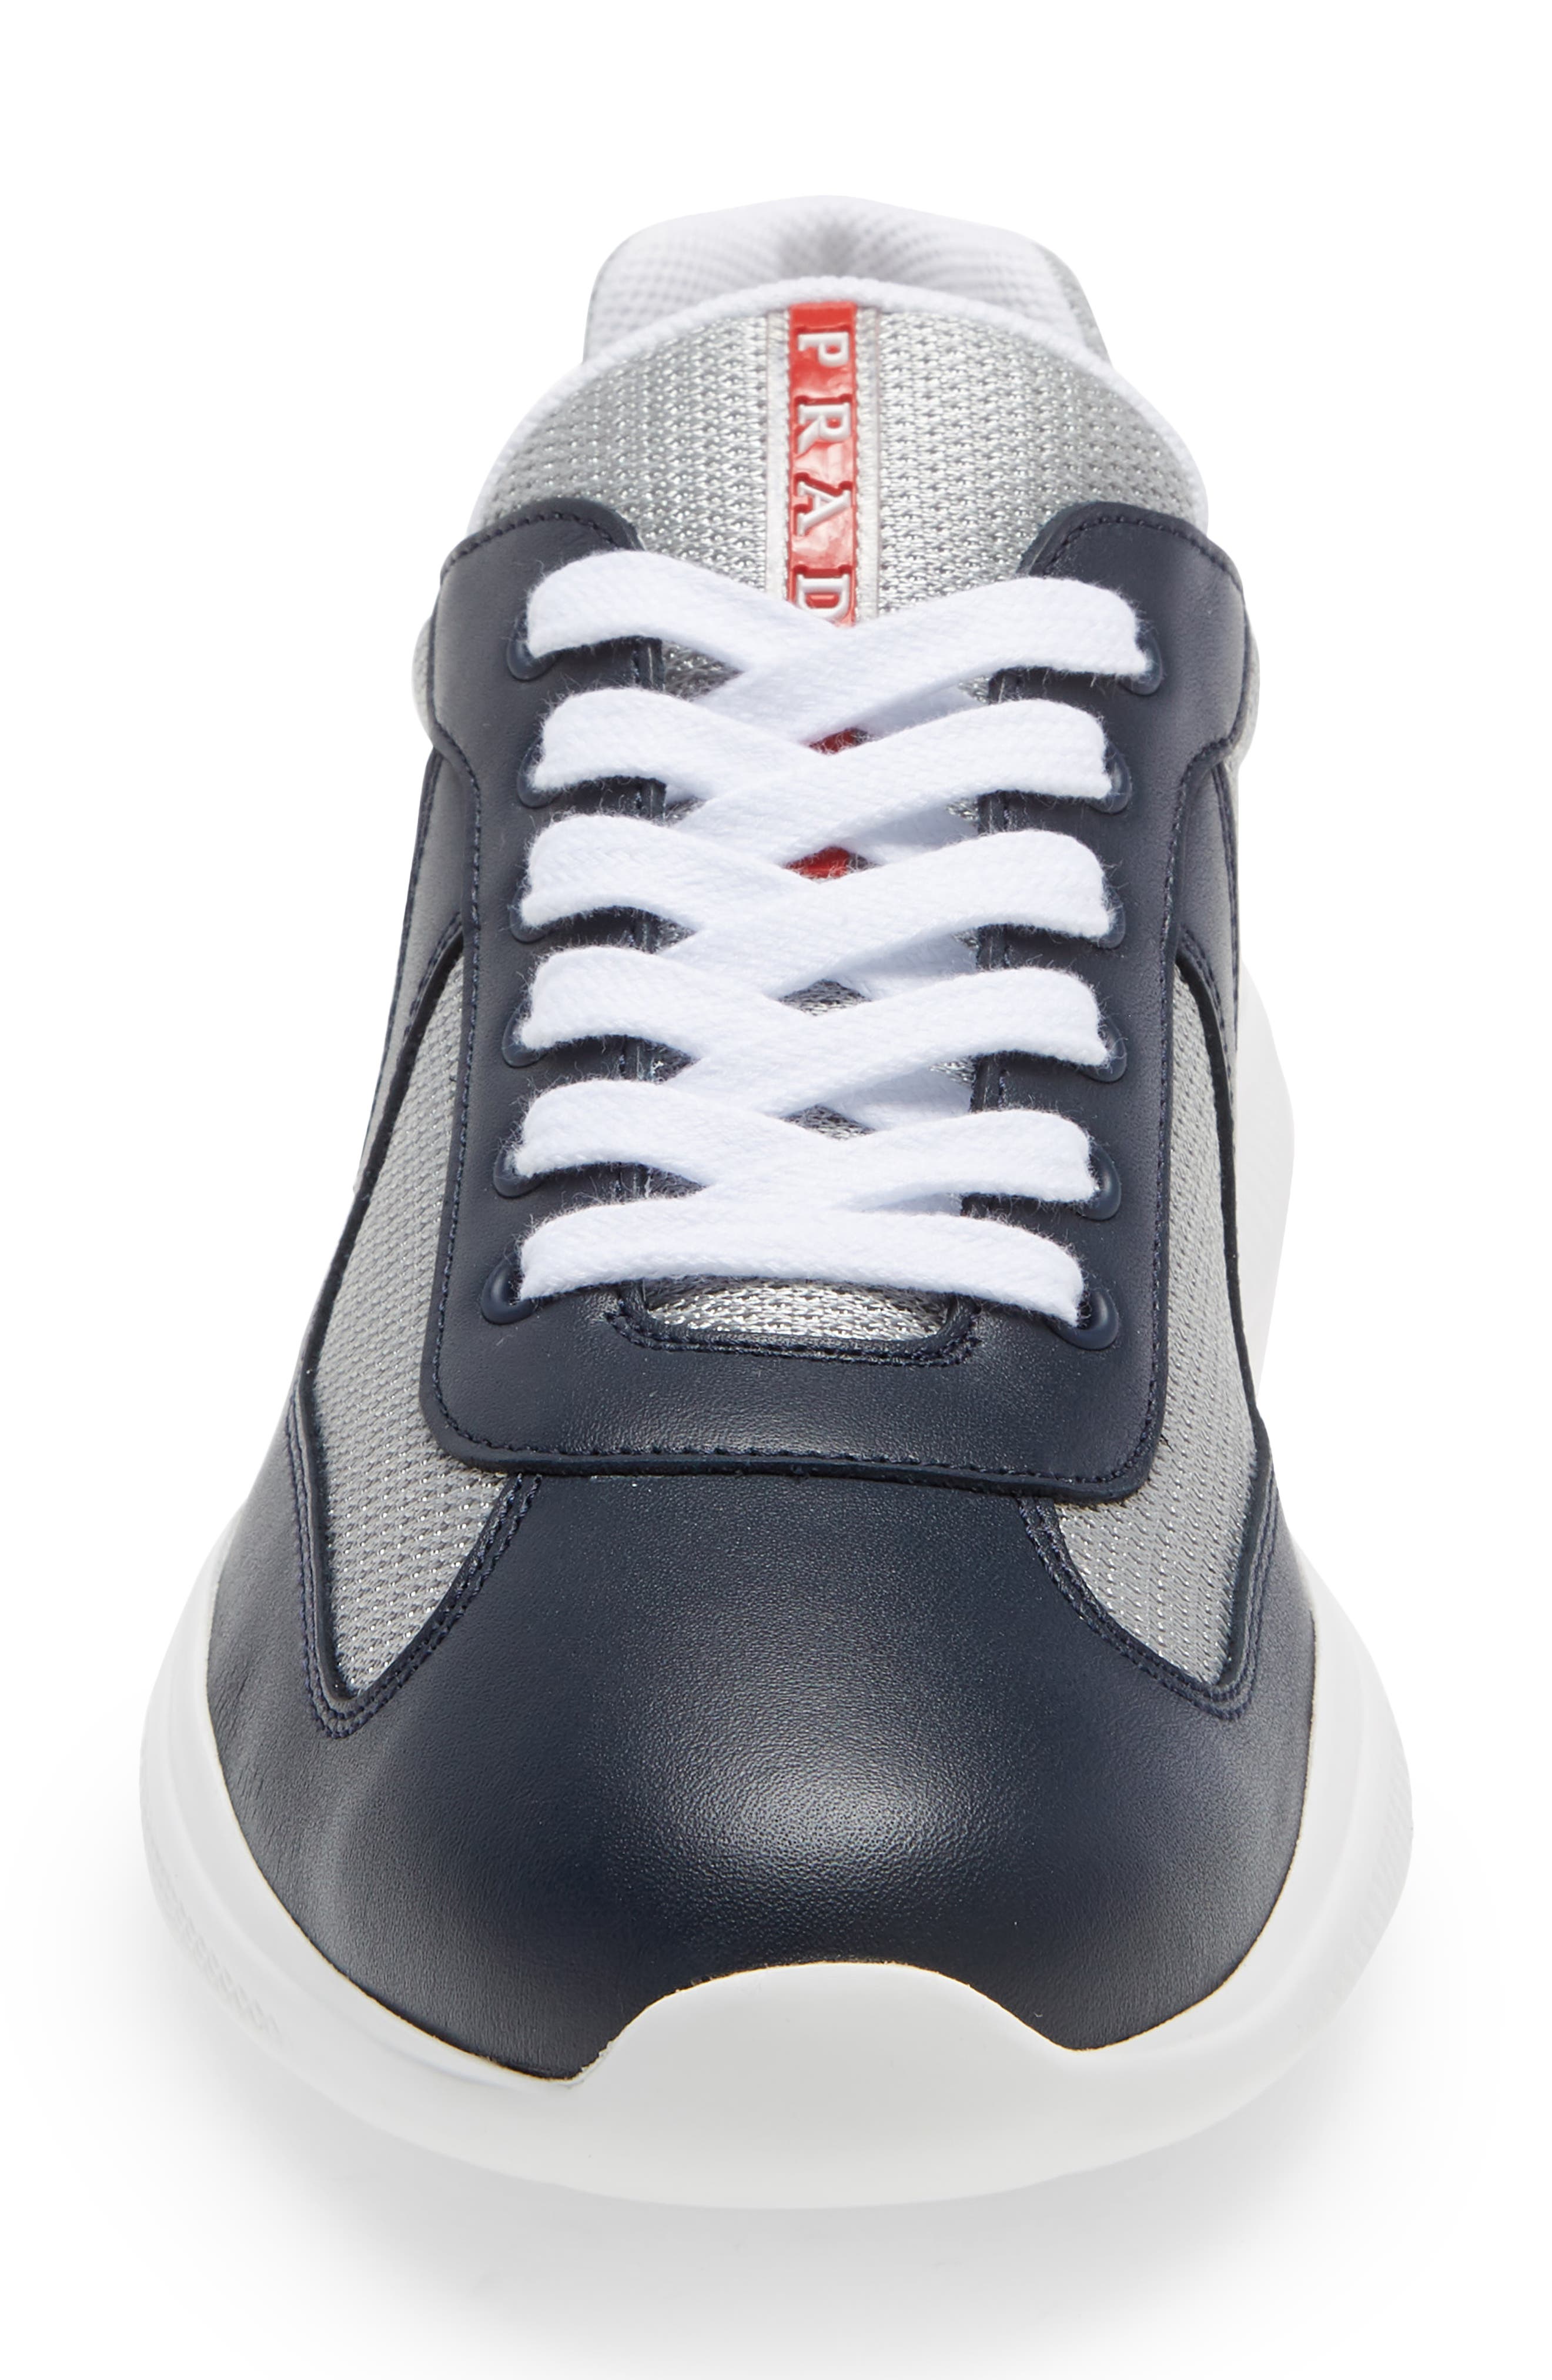 Prada America#39;s Cup low-top sneakers - Grey